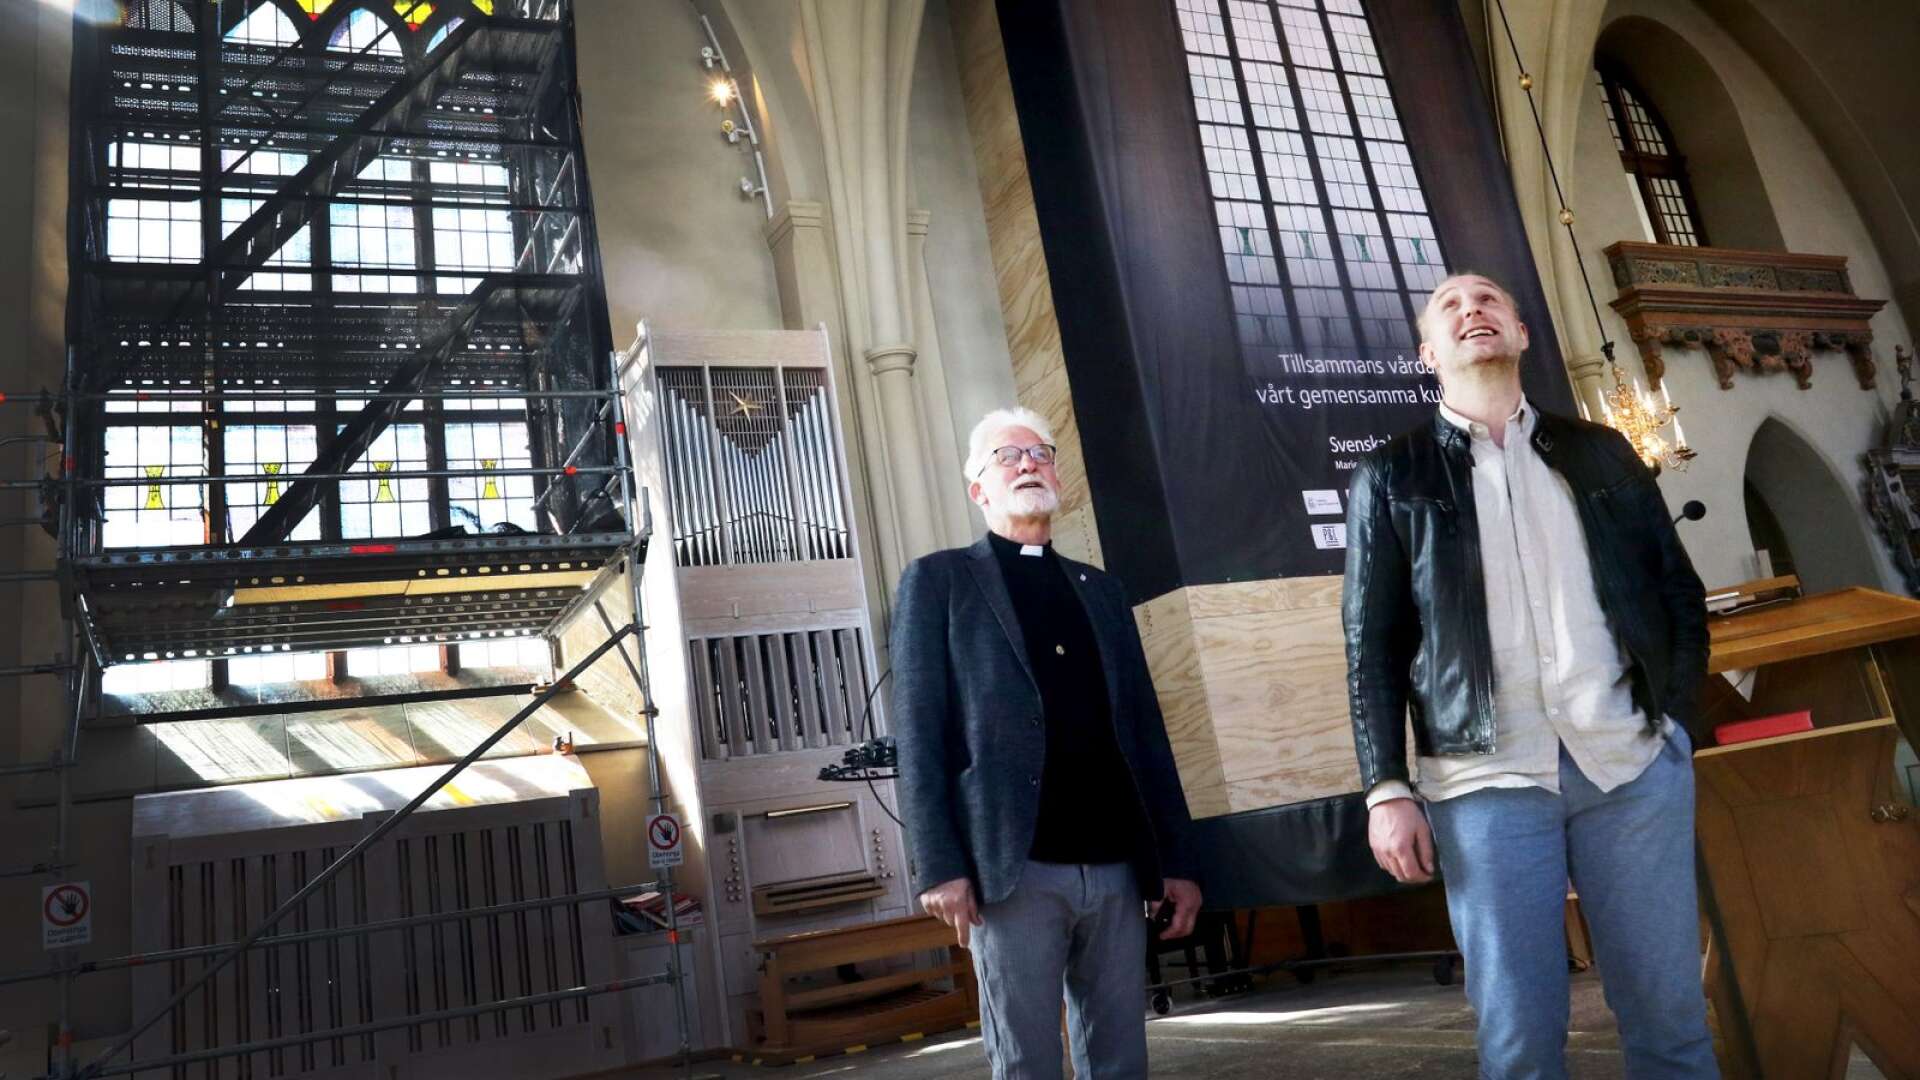 Kyrkoherde Willem-Jan Fens och fastighetsförvaltare Valdas Siupinis konstaterar att renoveringen just påbörjats.